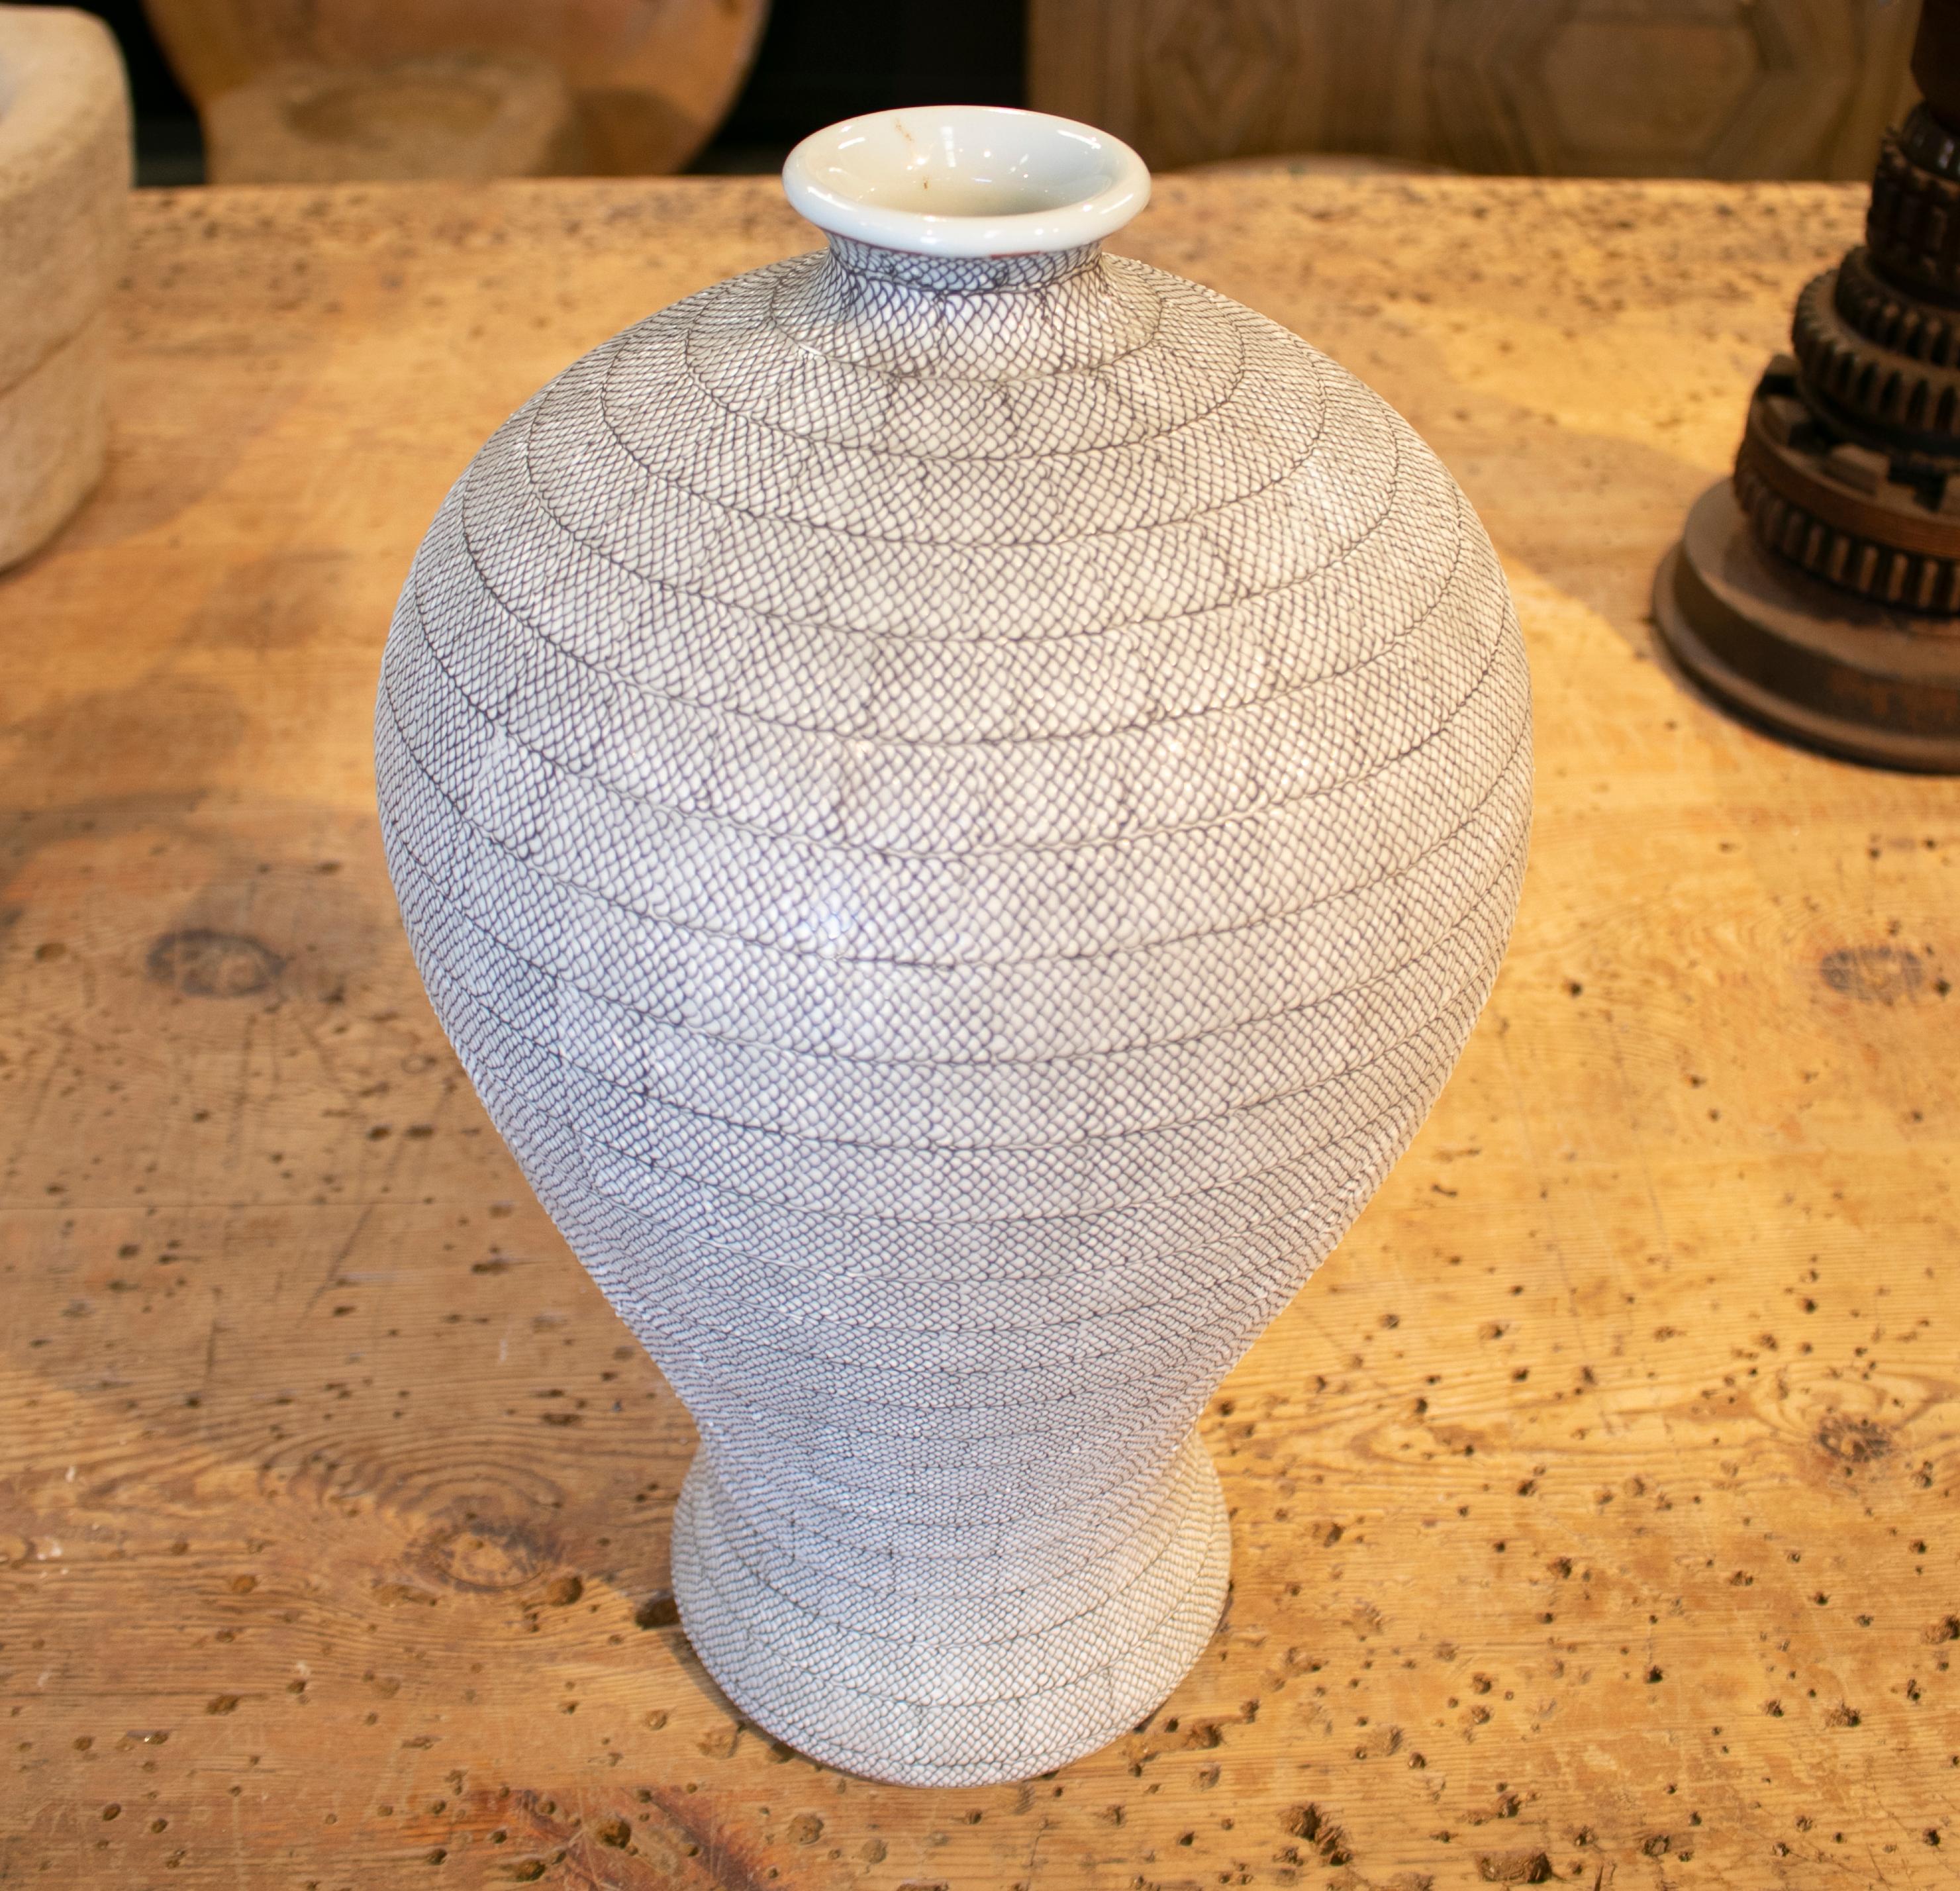 1990s Asiatic white ceramic vase with fish scales design.